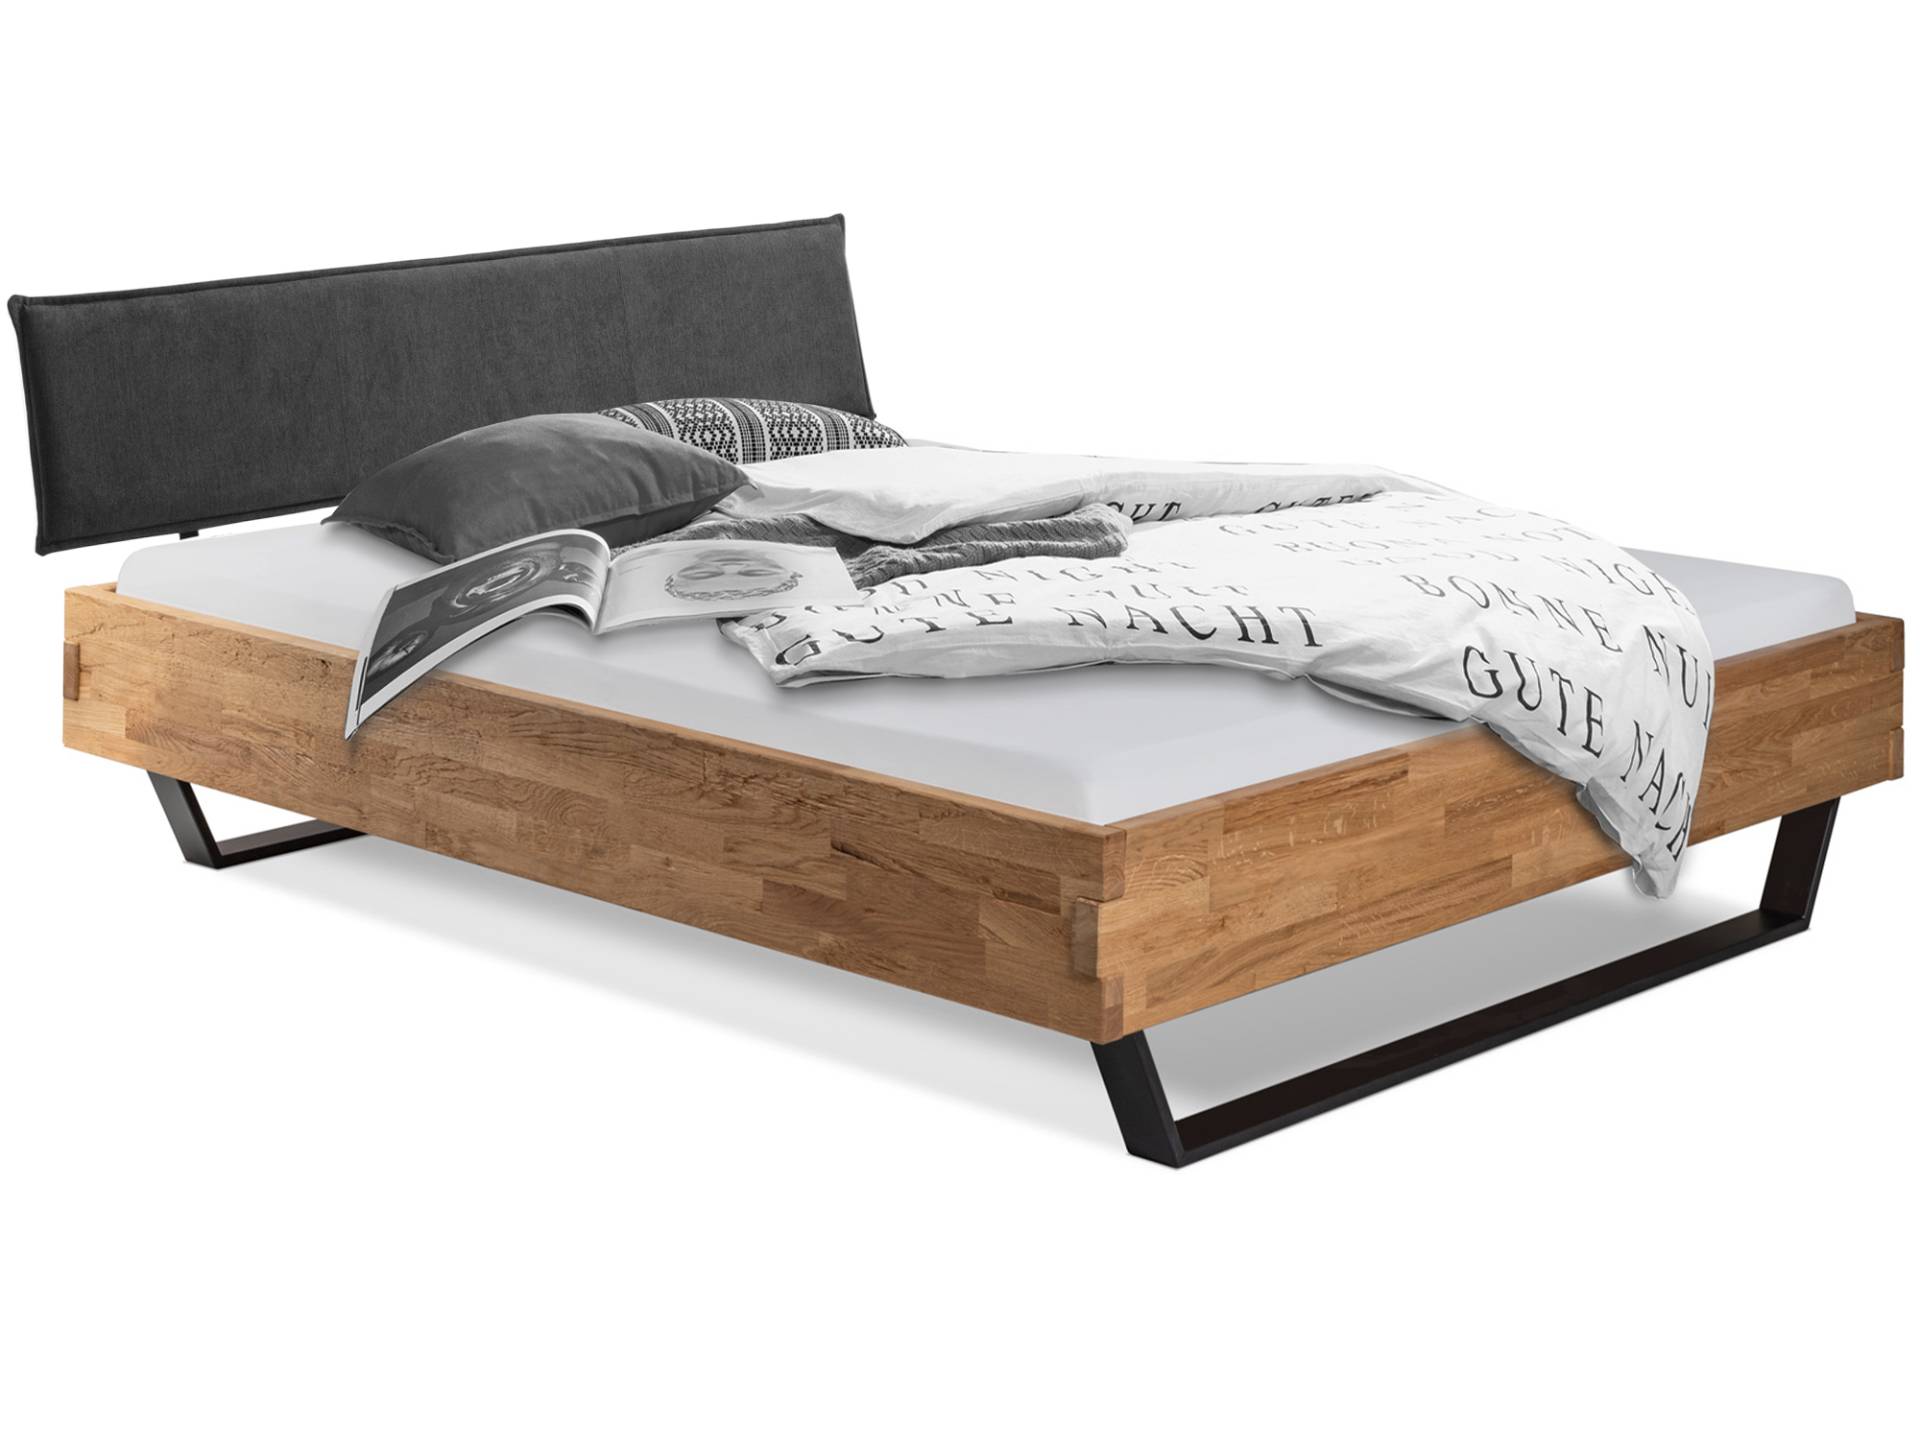 CORDINO Kufenbett aus gehackter Eiche mit Polsterkopfteil, Material Massivholz von Möbel-Eins